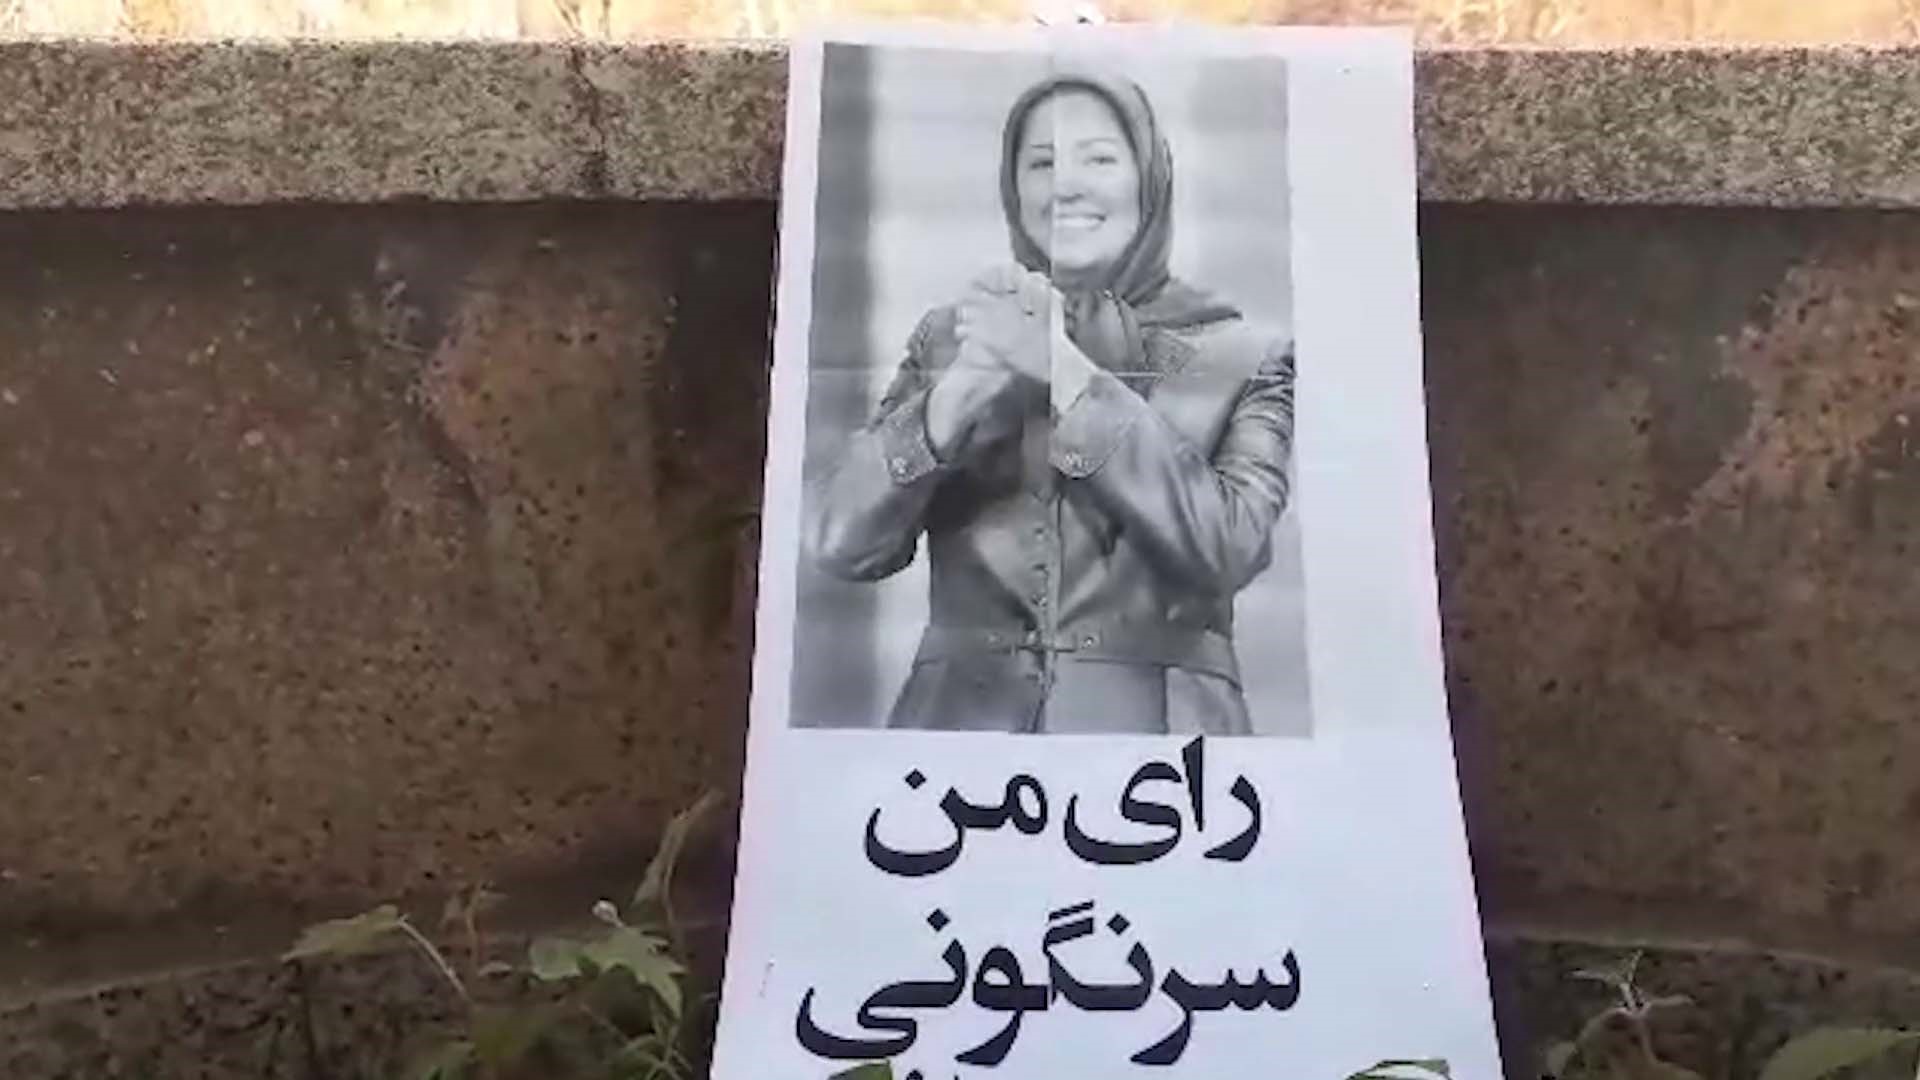 Tehran - Moniriyeh